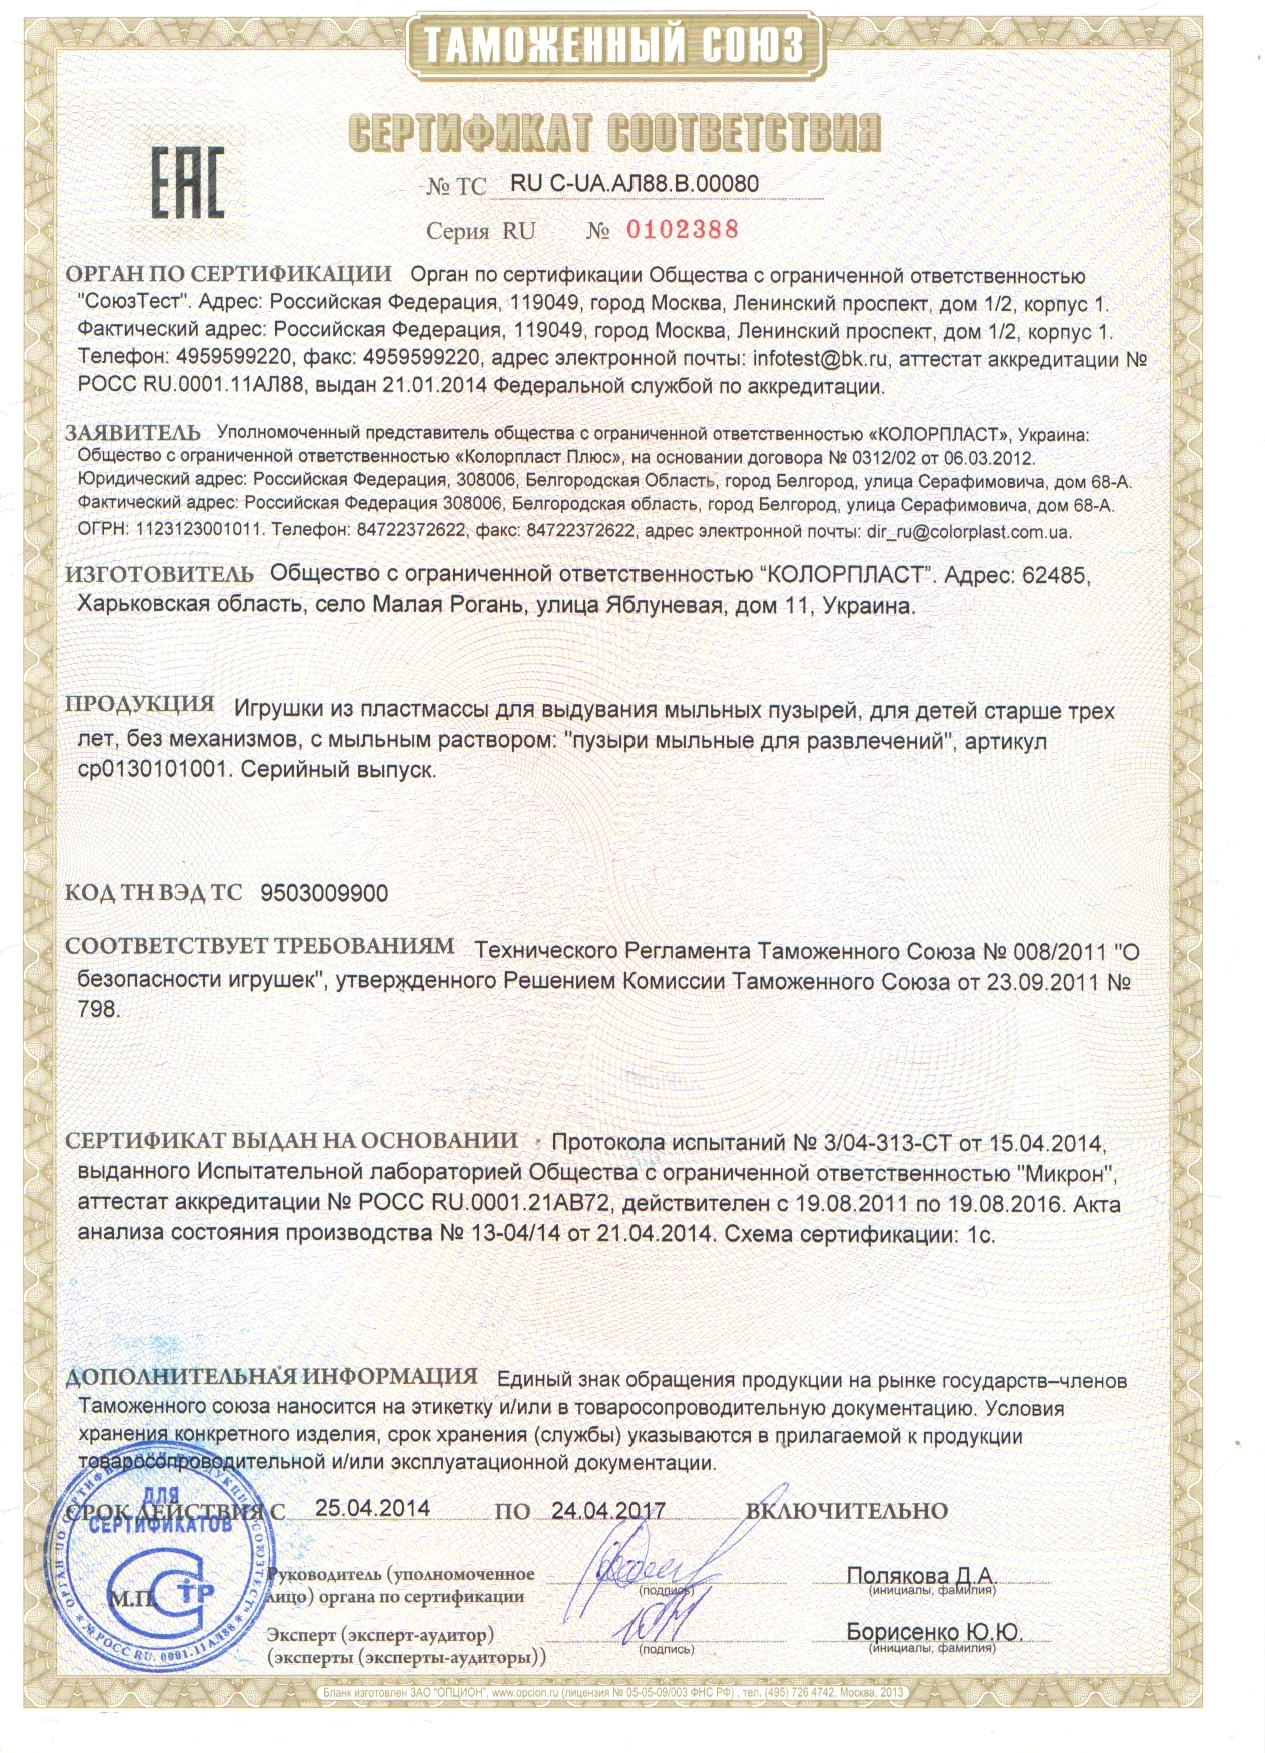 Сертификат соответствия ТР ТС, получить сертификат соответствия таможенного  союза